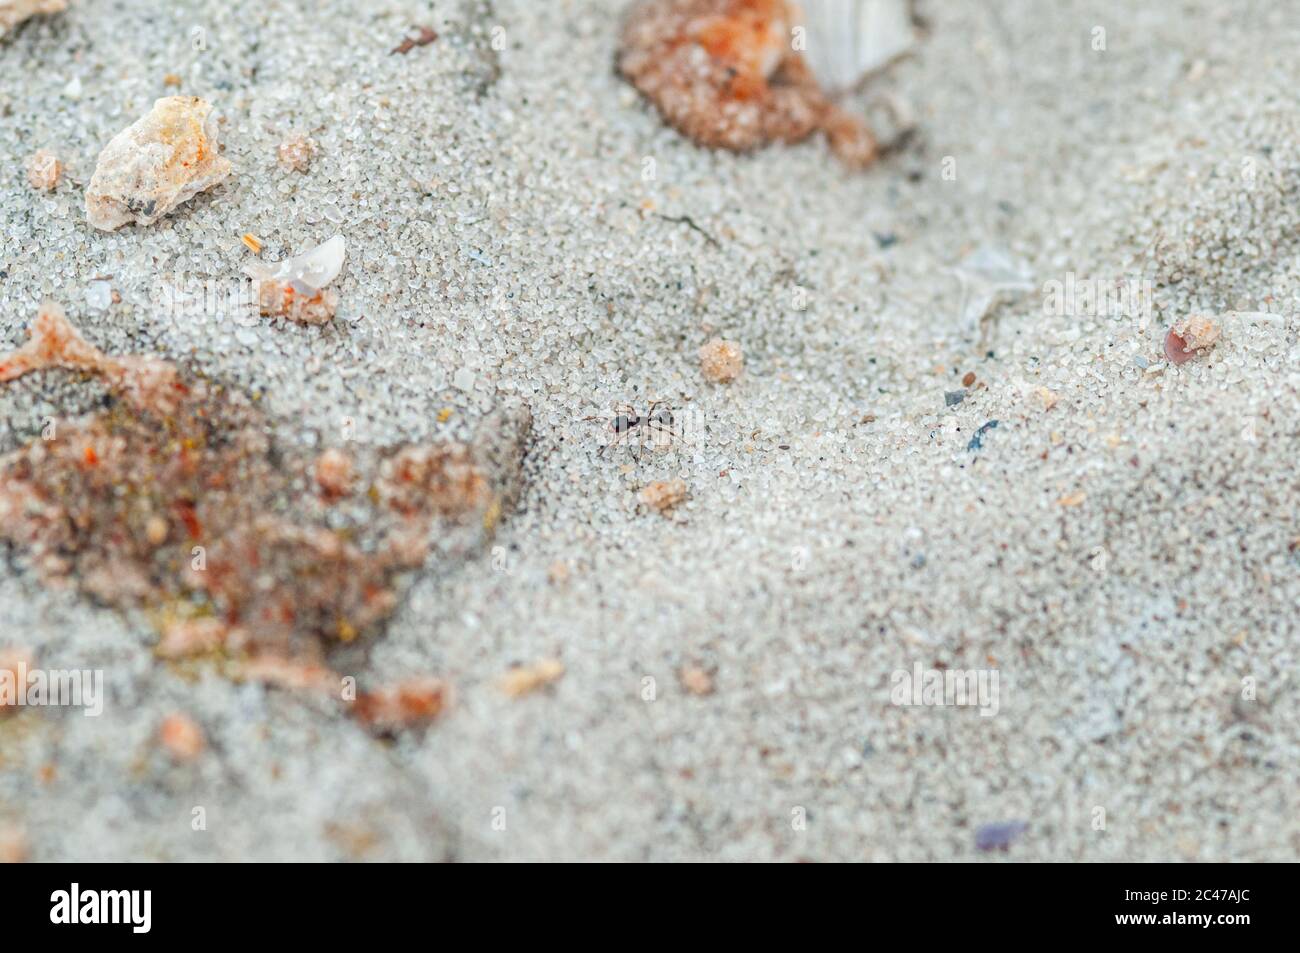 Eine Ameise, die durch den Sand läuft Stockfoto